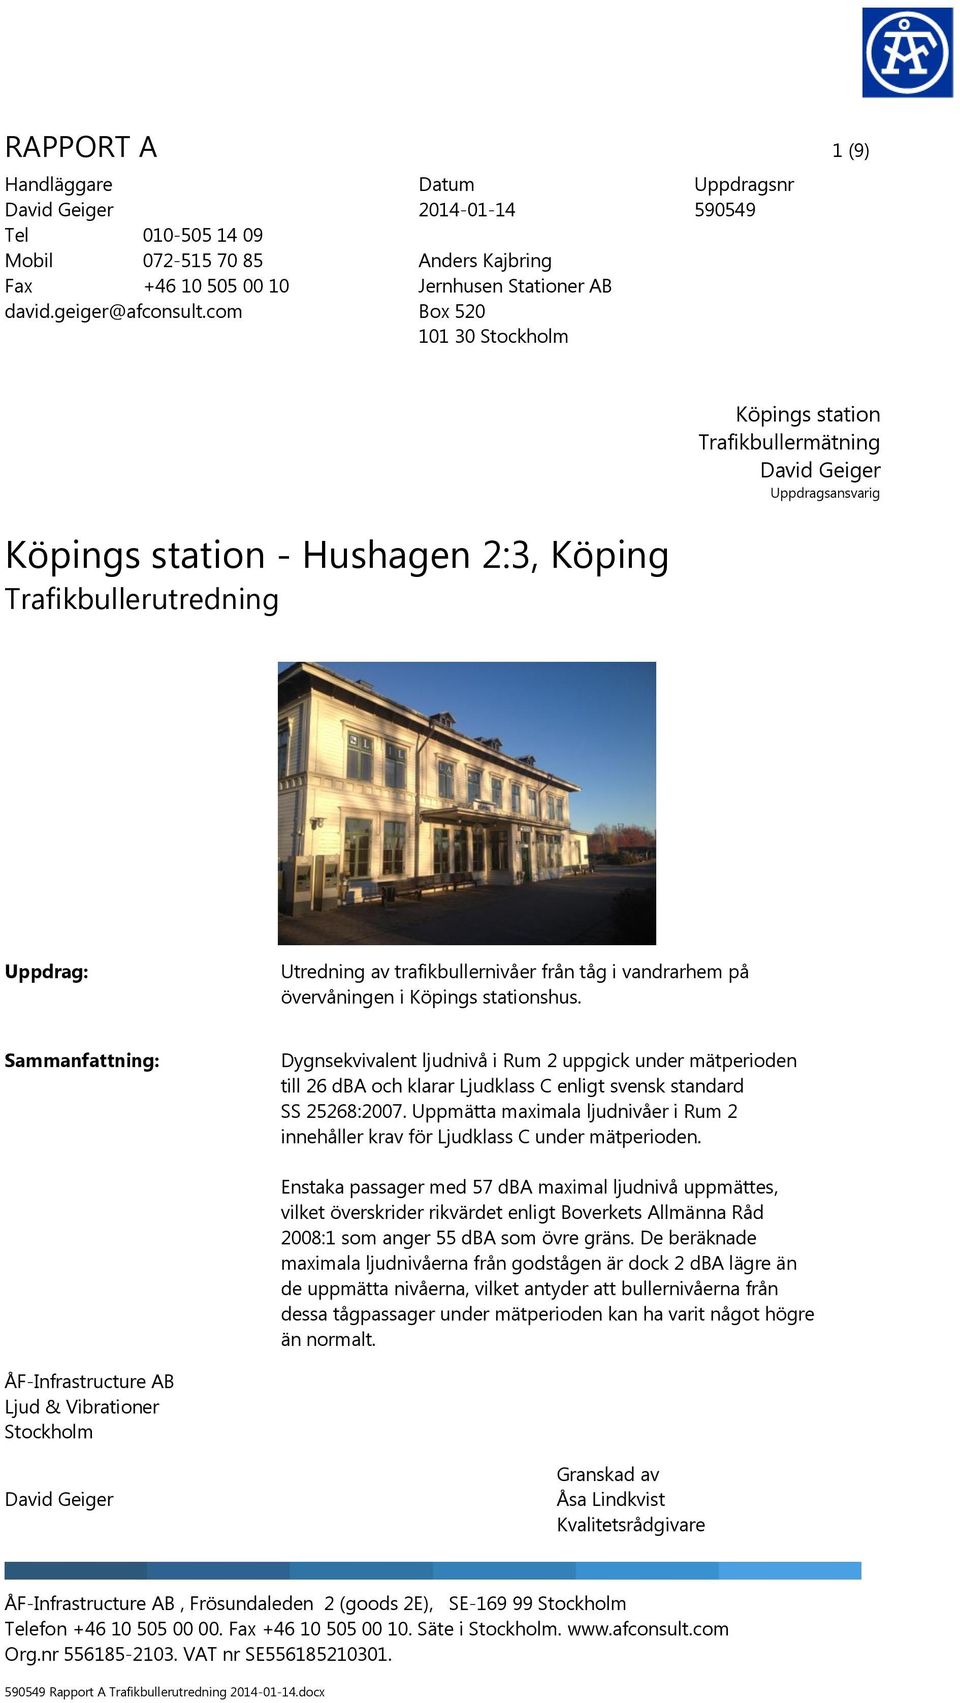 David Geiger Uppdragsansvarig Uppdrag: Utredning av trafikbullernivåer från tåg i vandrarhem på övervåningen i Köpings stationshus.